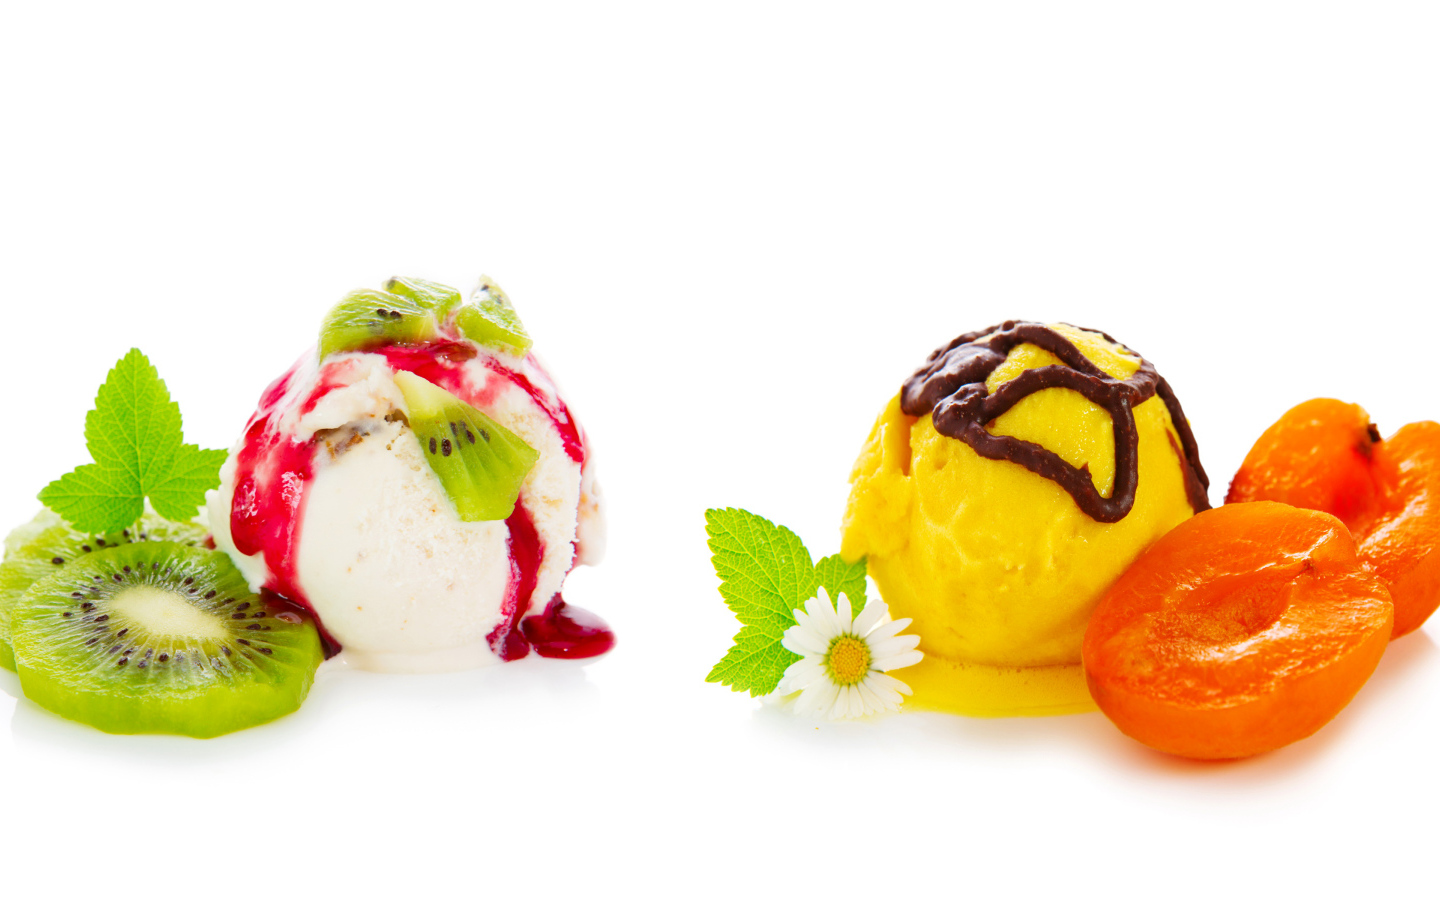 Шарики мороженого с киви и абрикосами на белом фоне